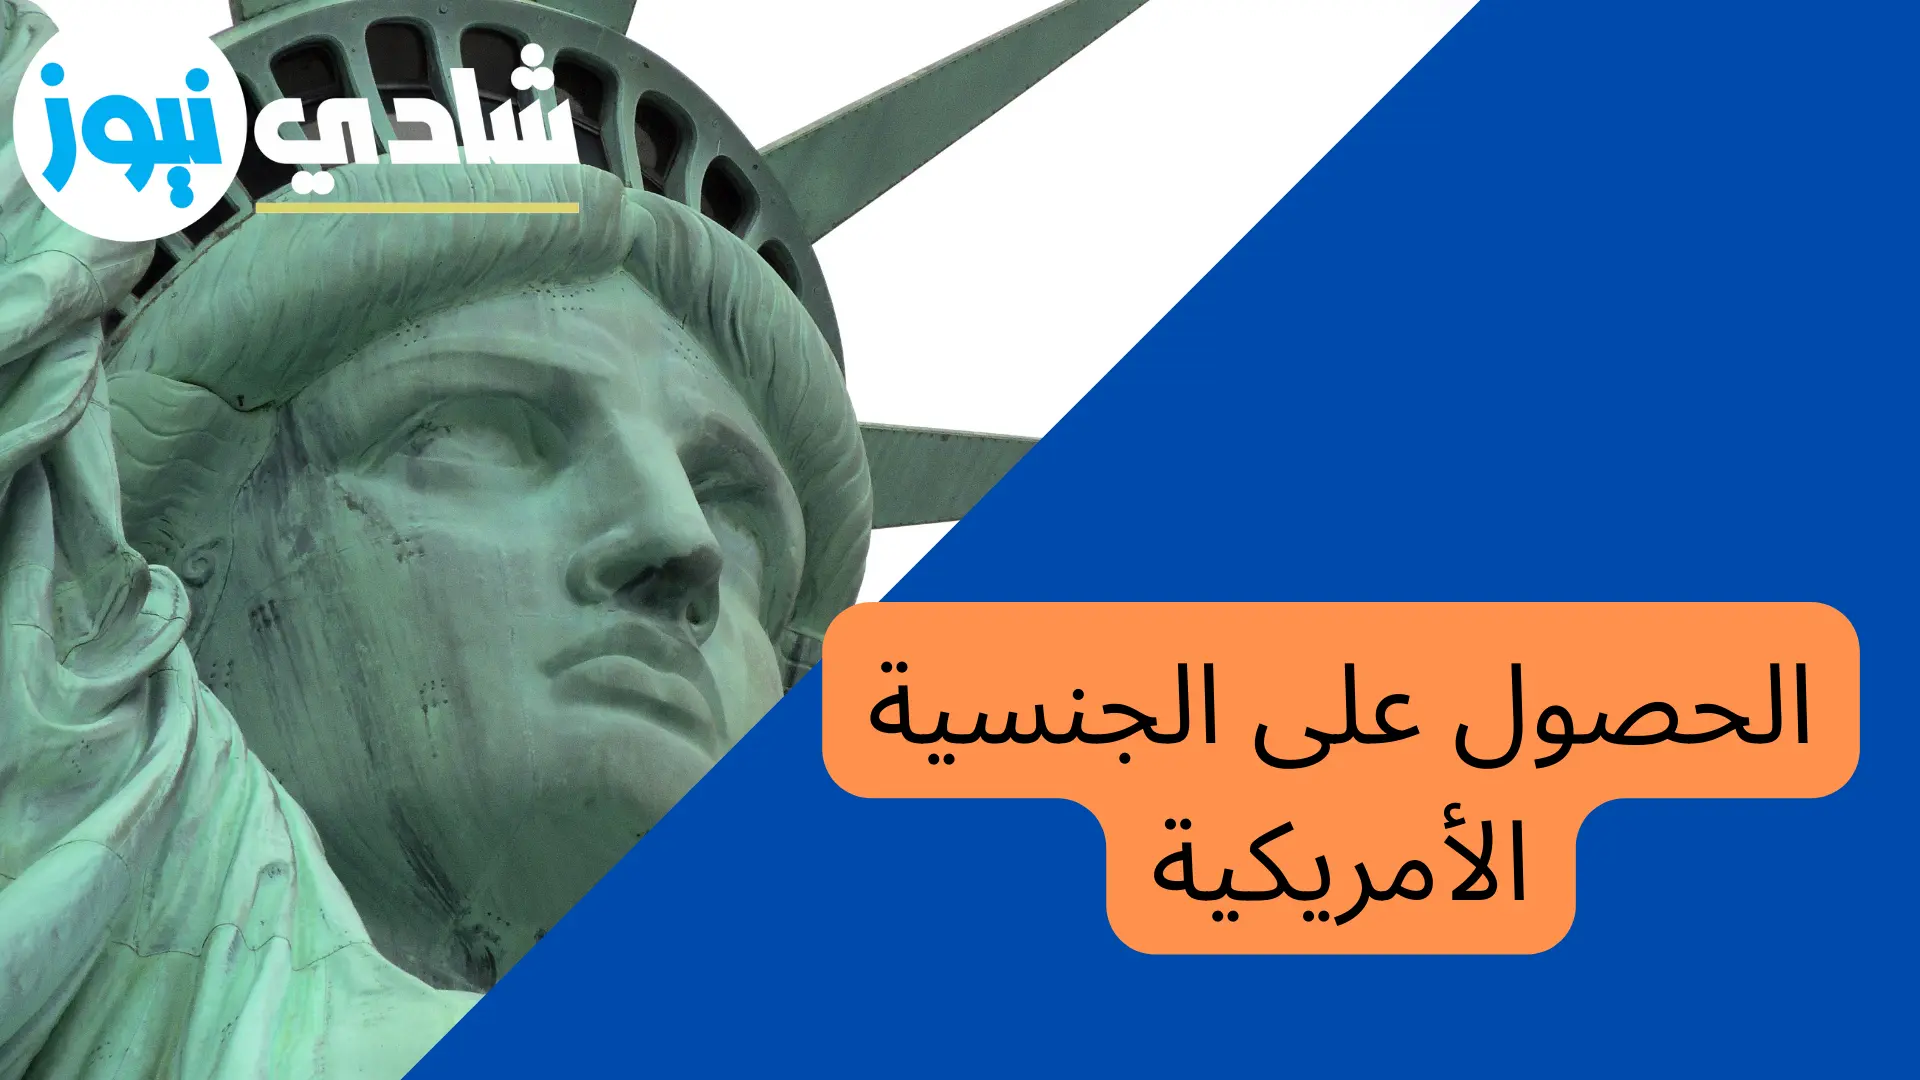 الجنسية الأمريكية .. 128 سؤال وجواب بالعربية والانجليزية